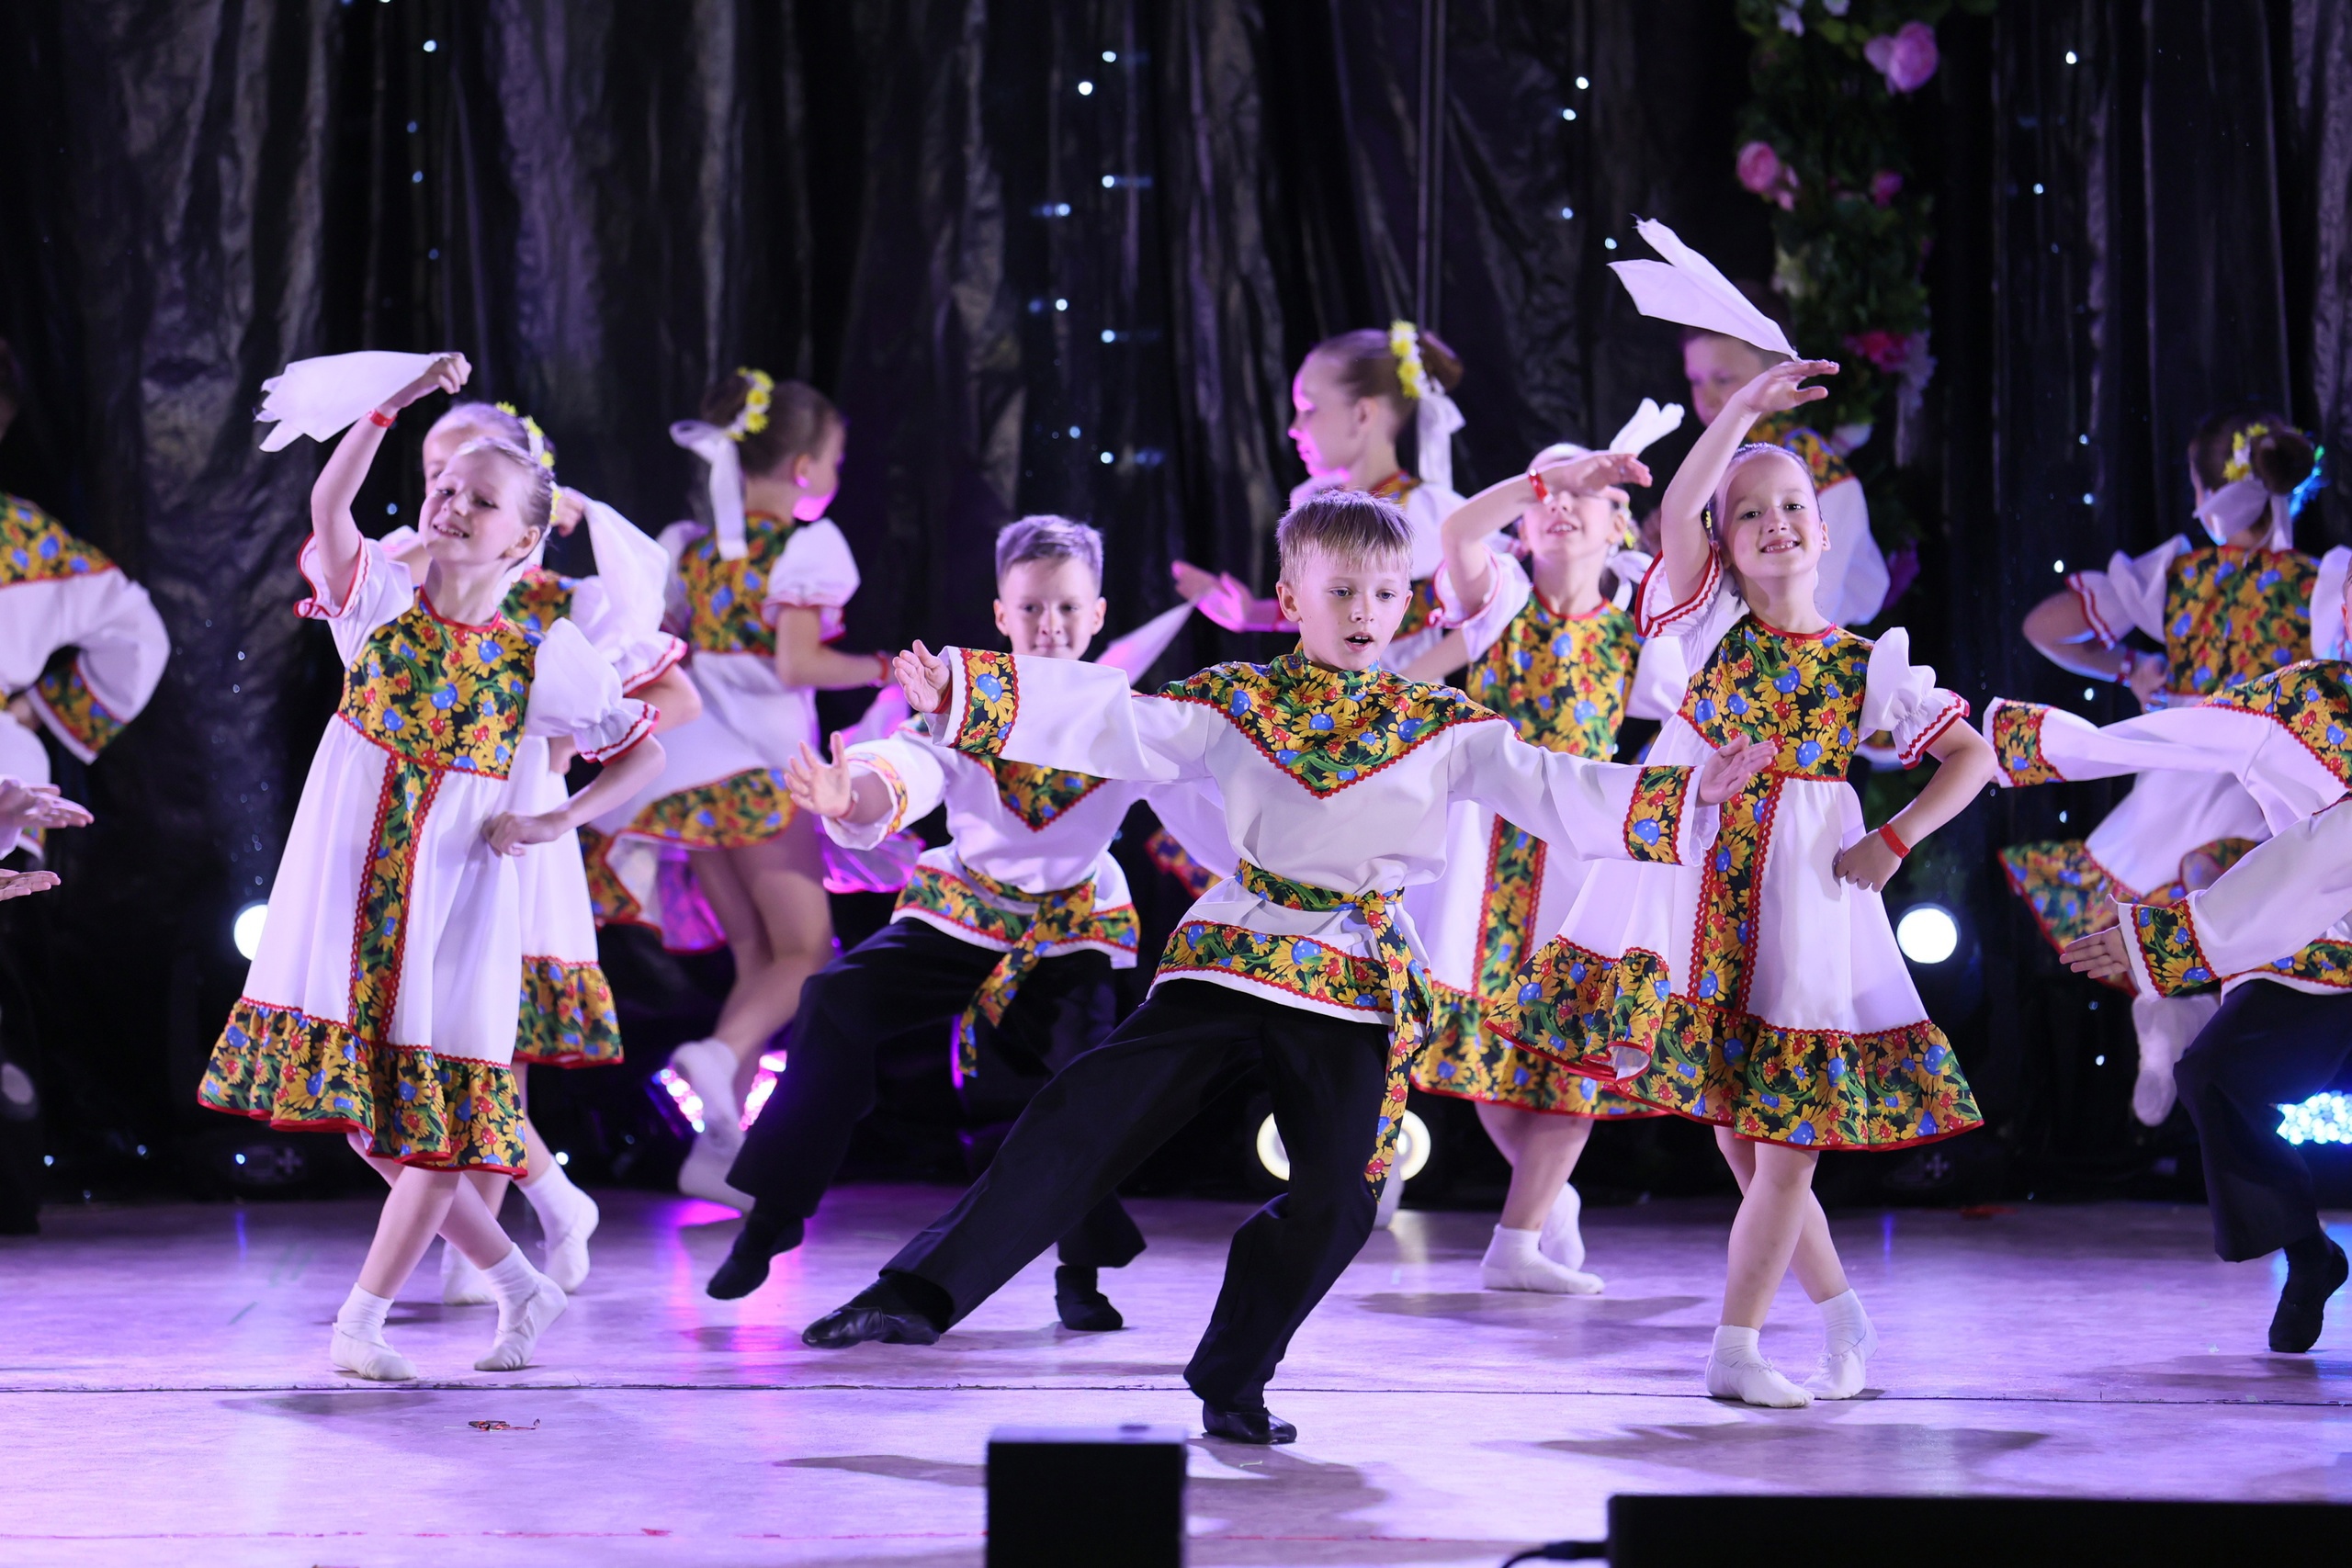 Руководитель образцового детского театра танца «Самарка» Людмила Попкова: «Творчество — смысл моей жизни»